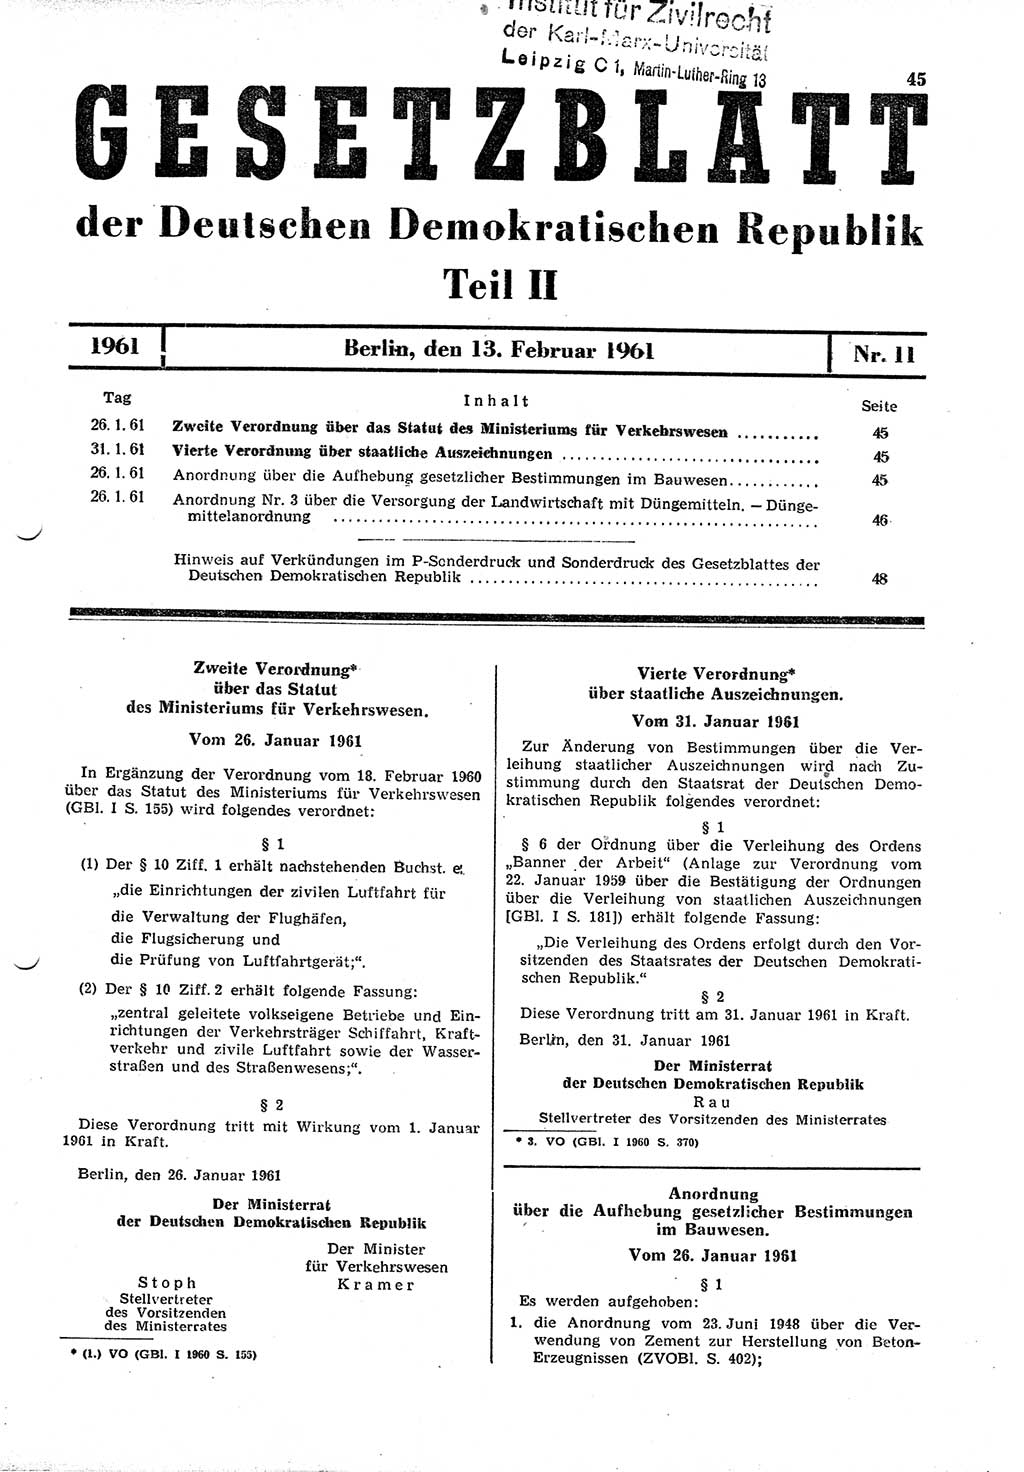 Gesetzblatt (GBl.) der Deutschen Demokratischen Republik (DDR) Teil ⅠⅠ 1961, Seite 45 (GBl. DDR ⅠⅠ 1961, S. 45)